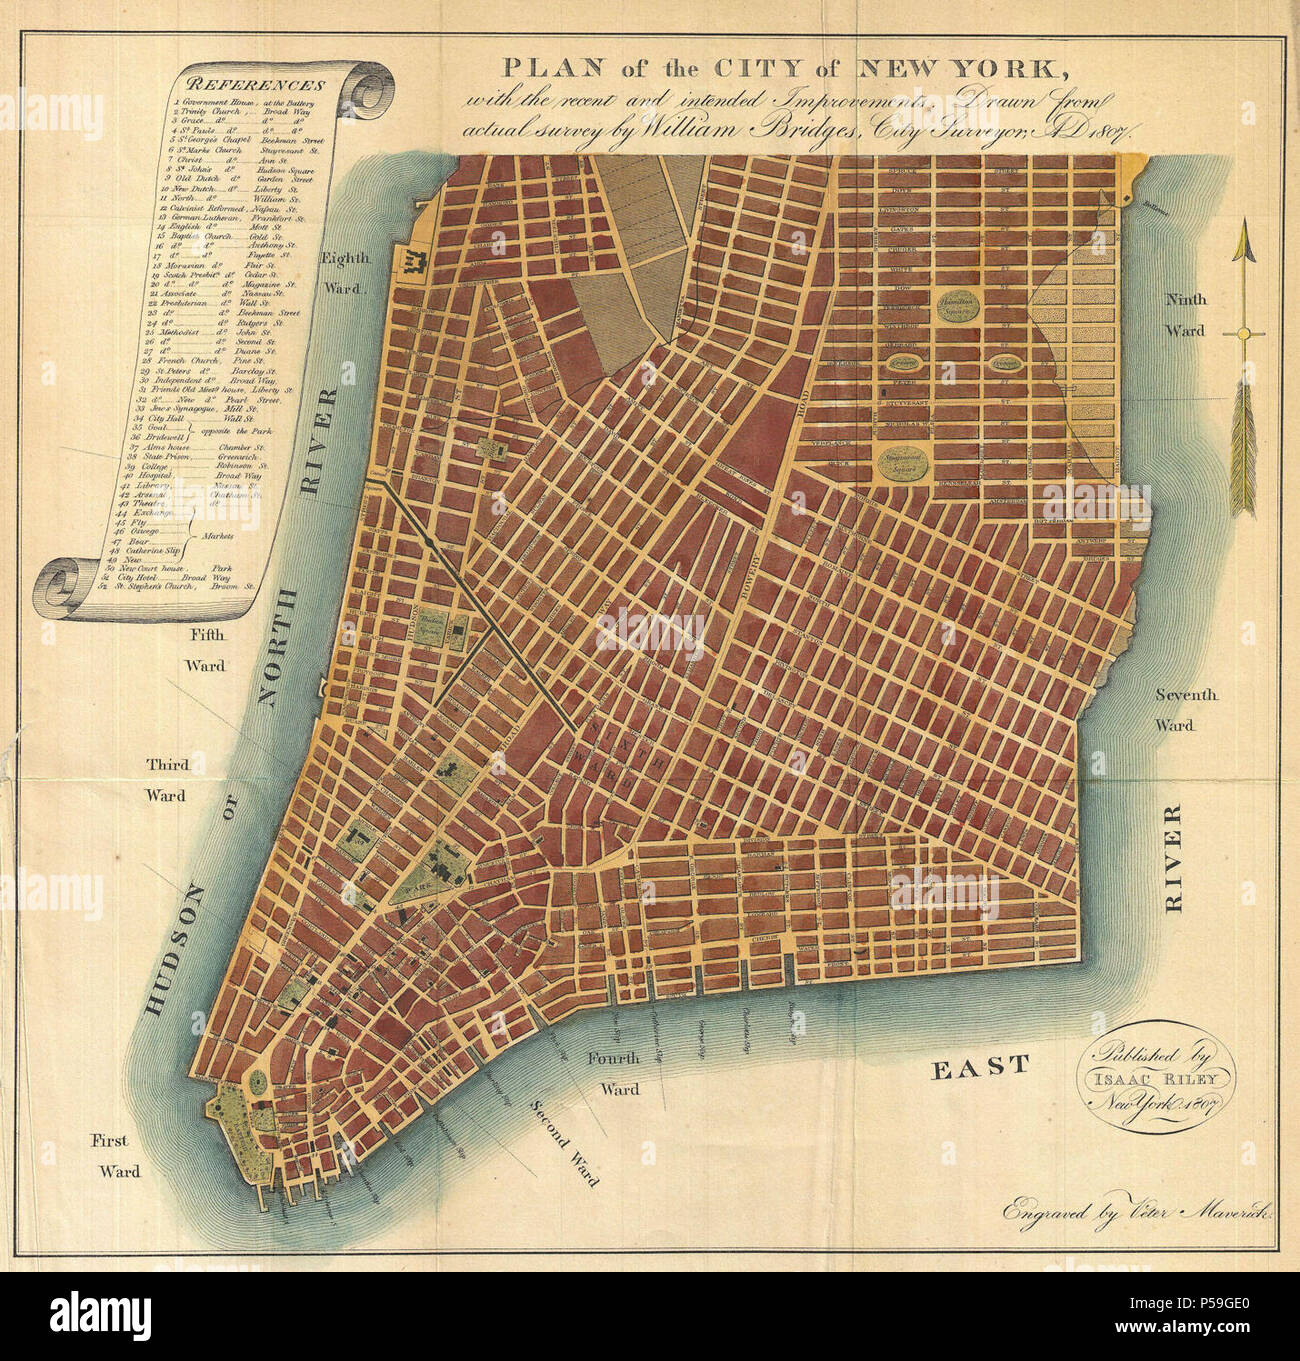 Ponts 1807 Plan de la ville de New York (1871) - Réédition Geographicus - NewYork-ponts 1871. Banque D'Images